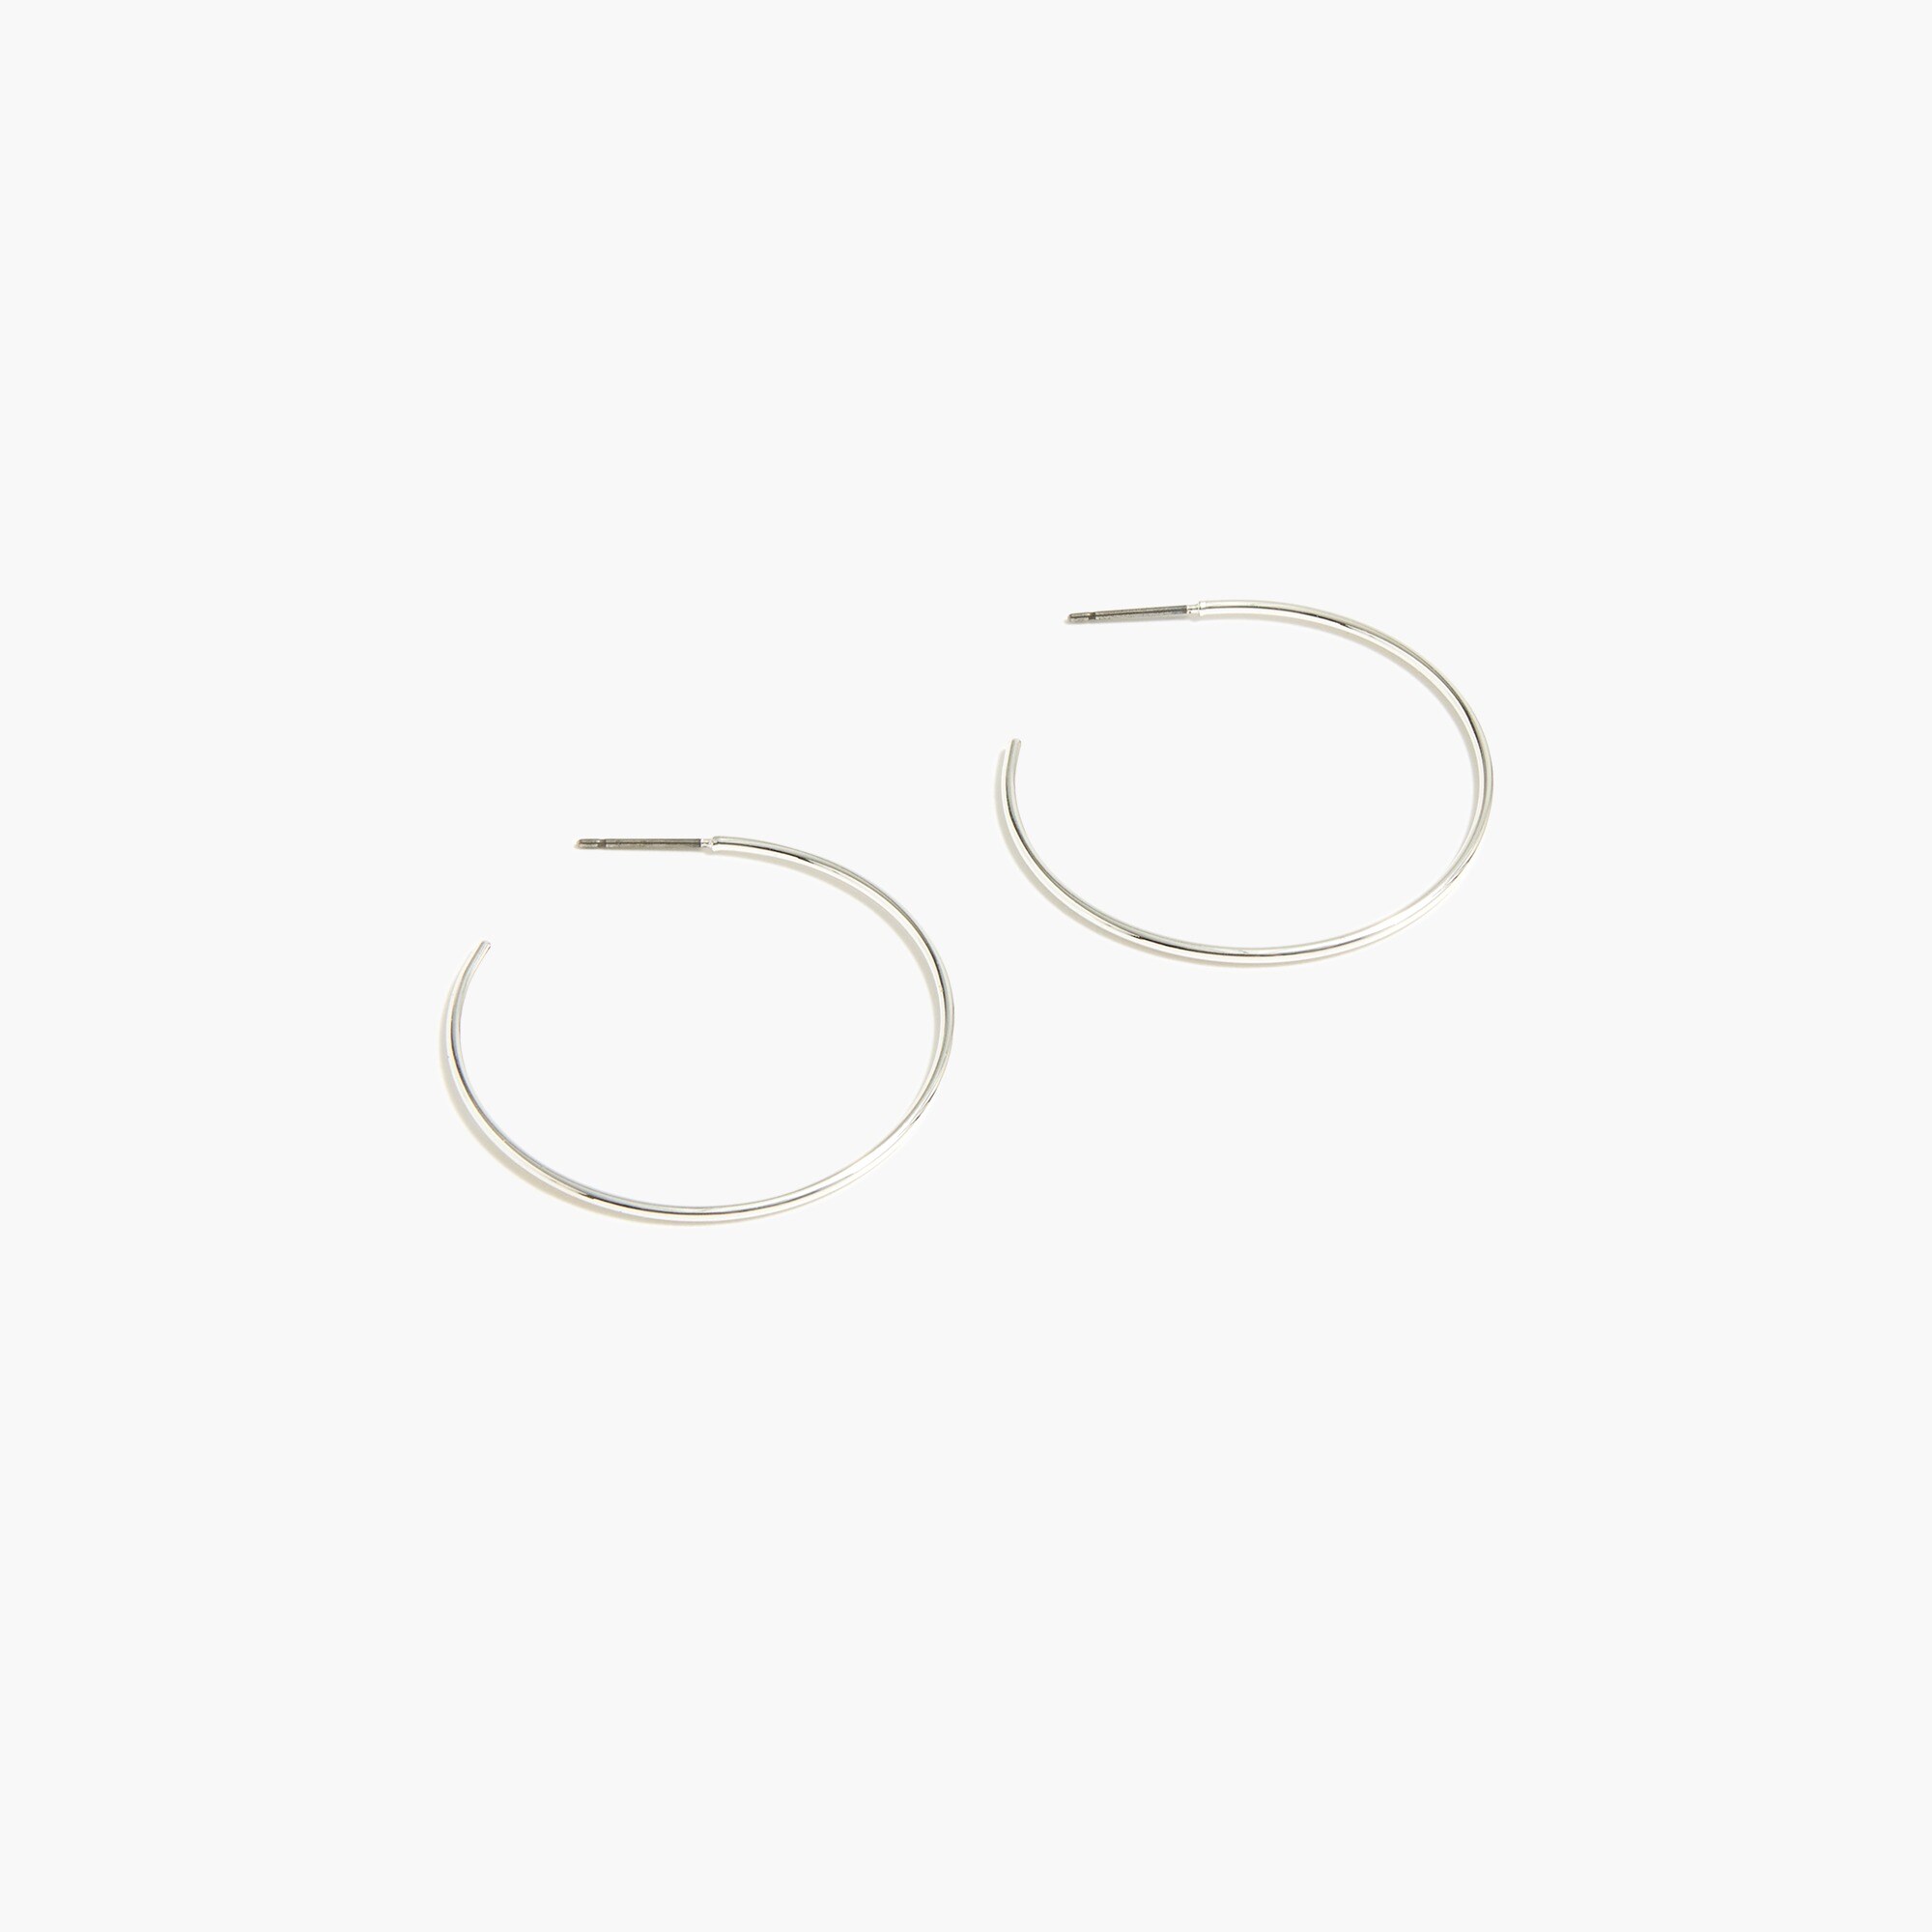  Simple hoop earrings